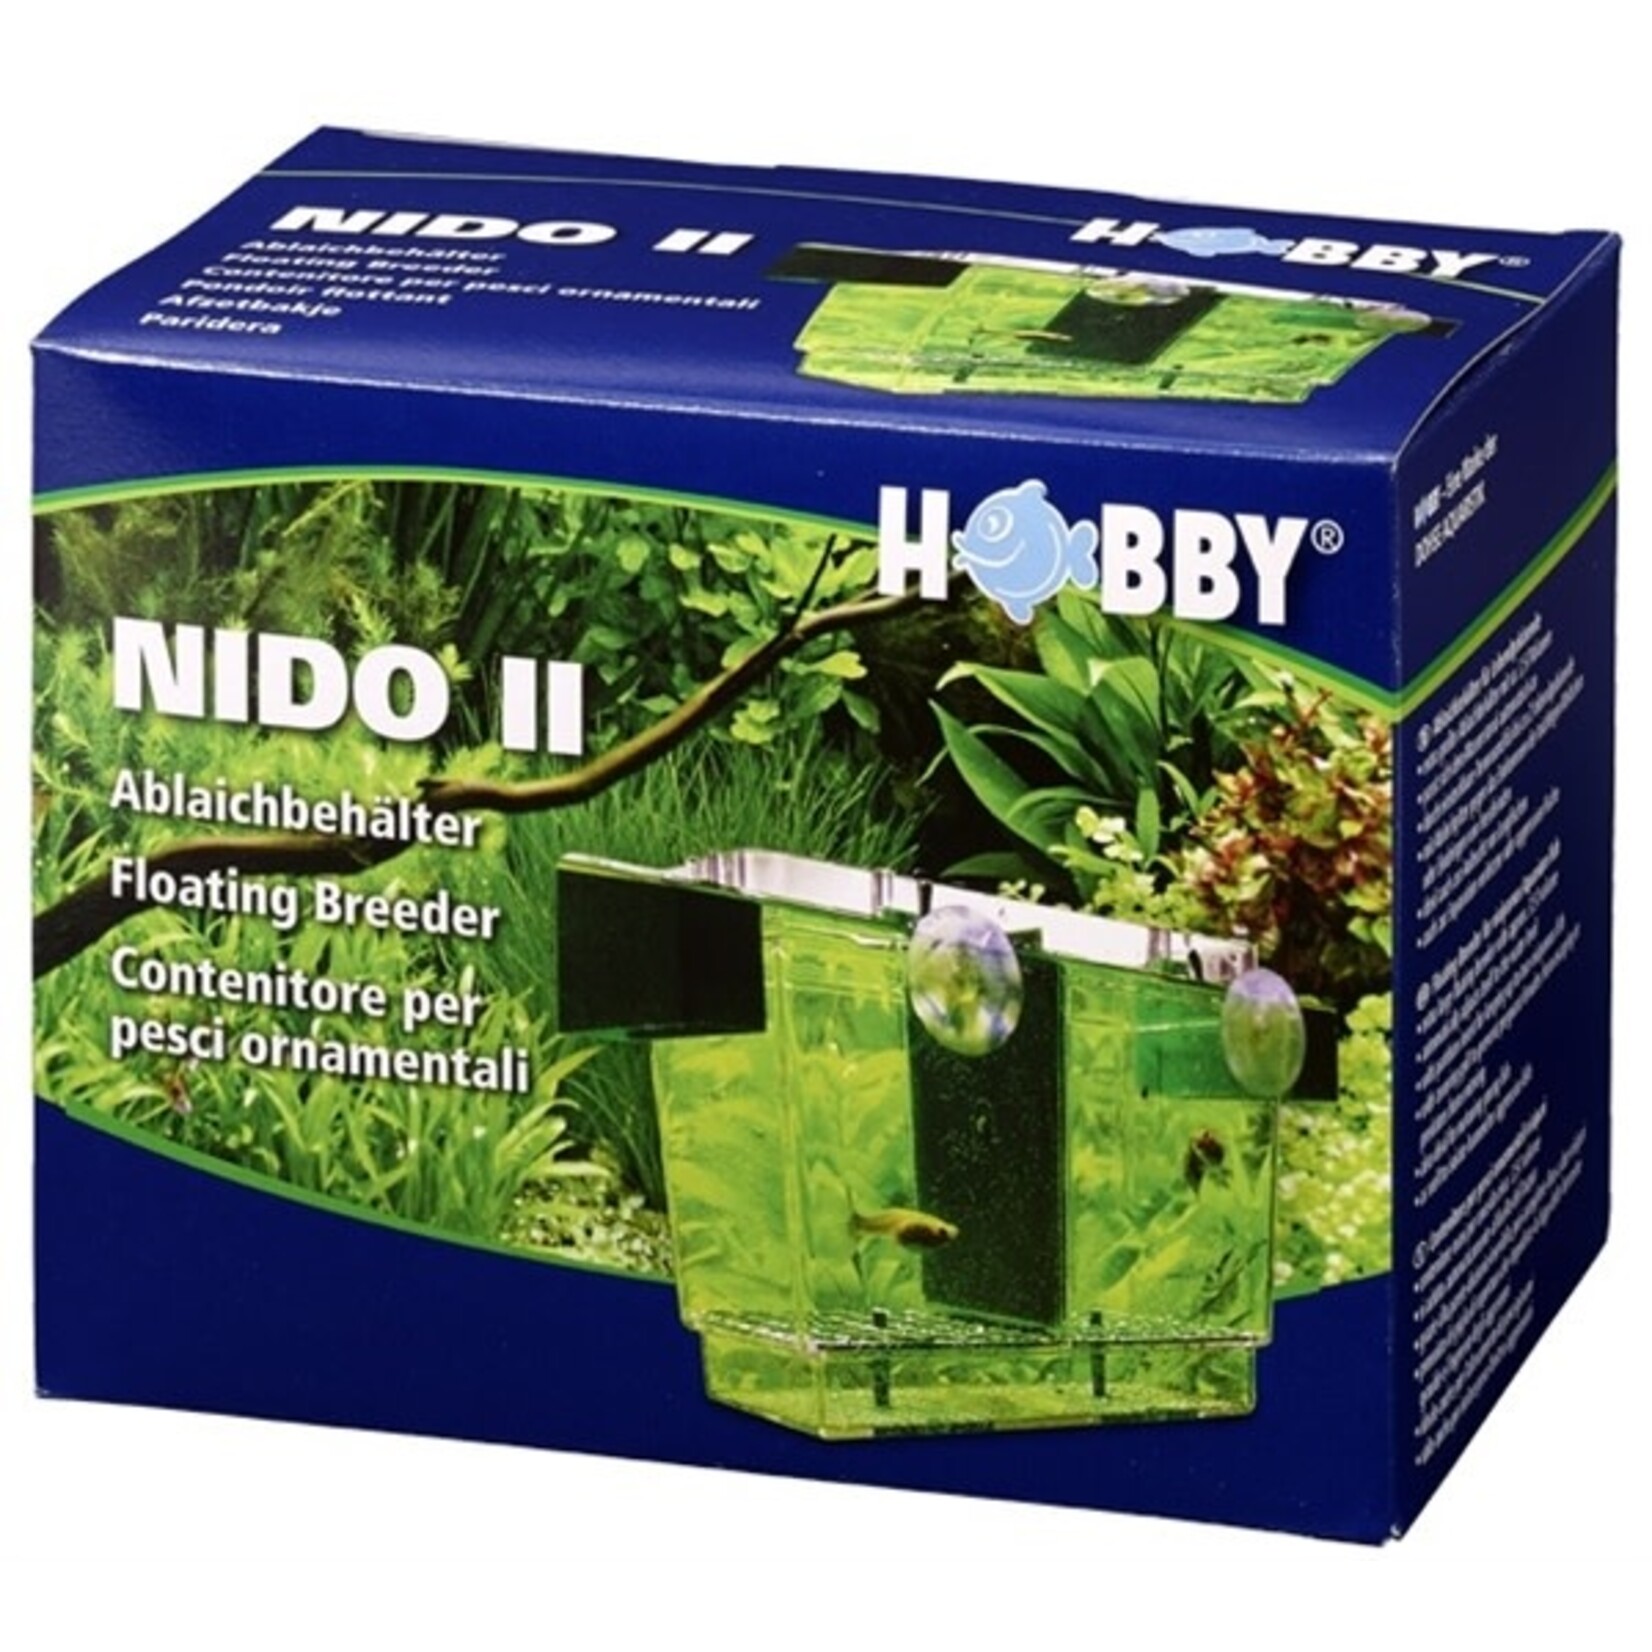 Hobby Nido 2 storage tray 21x16x14 cm